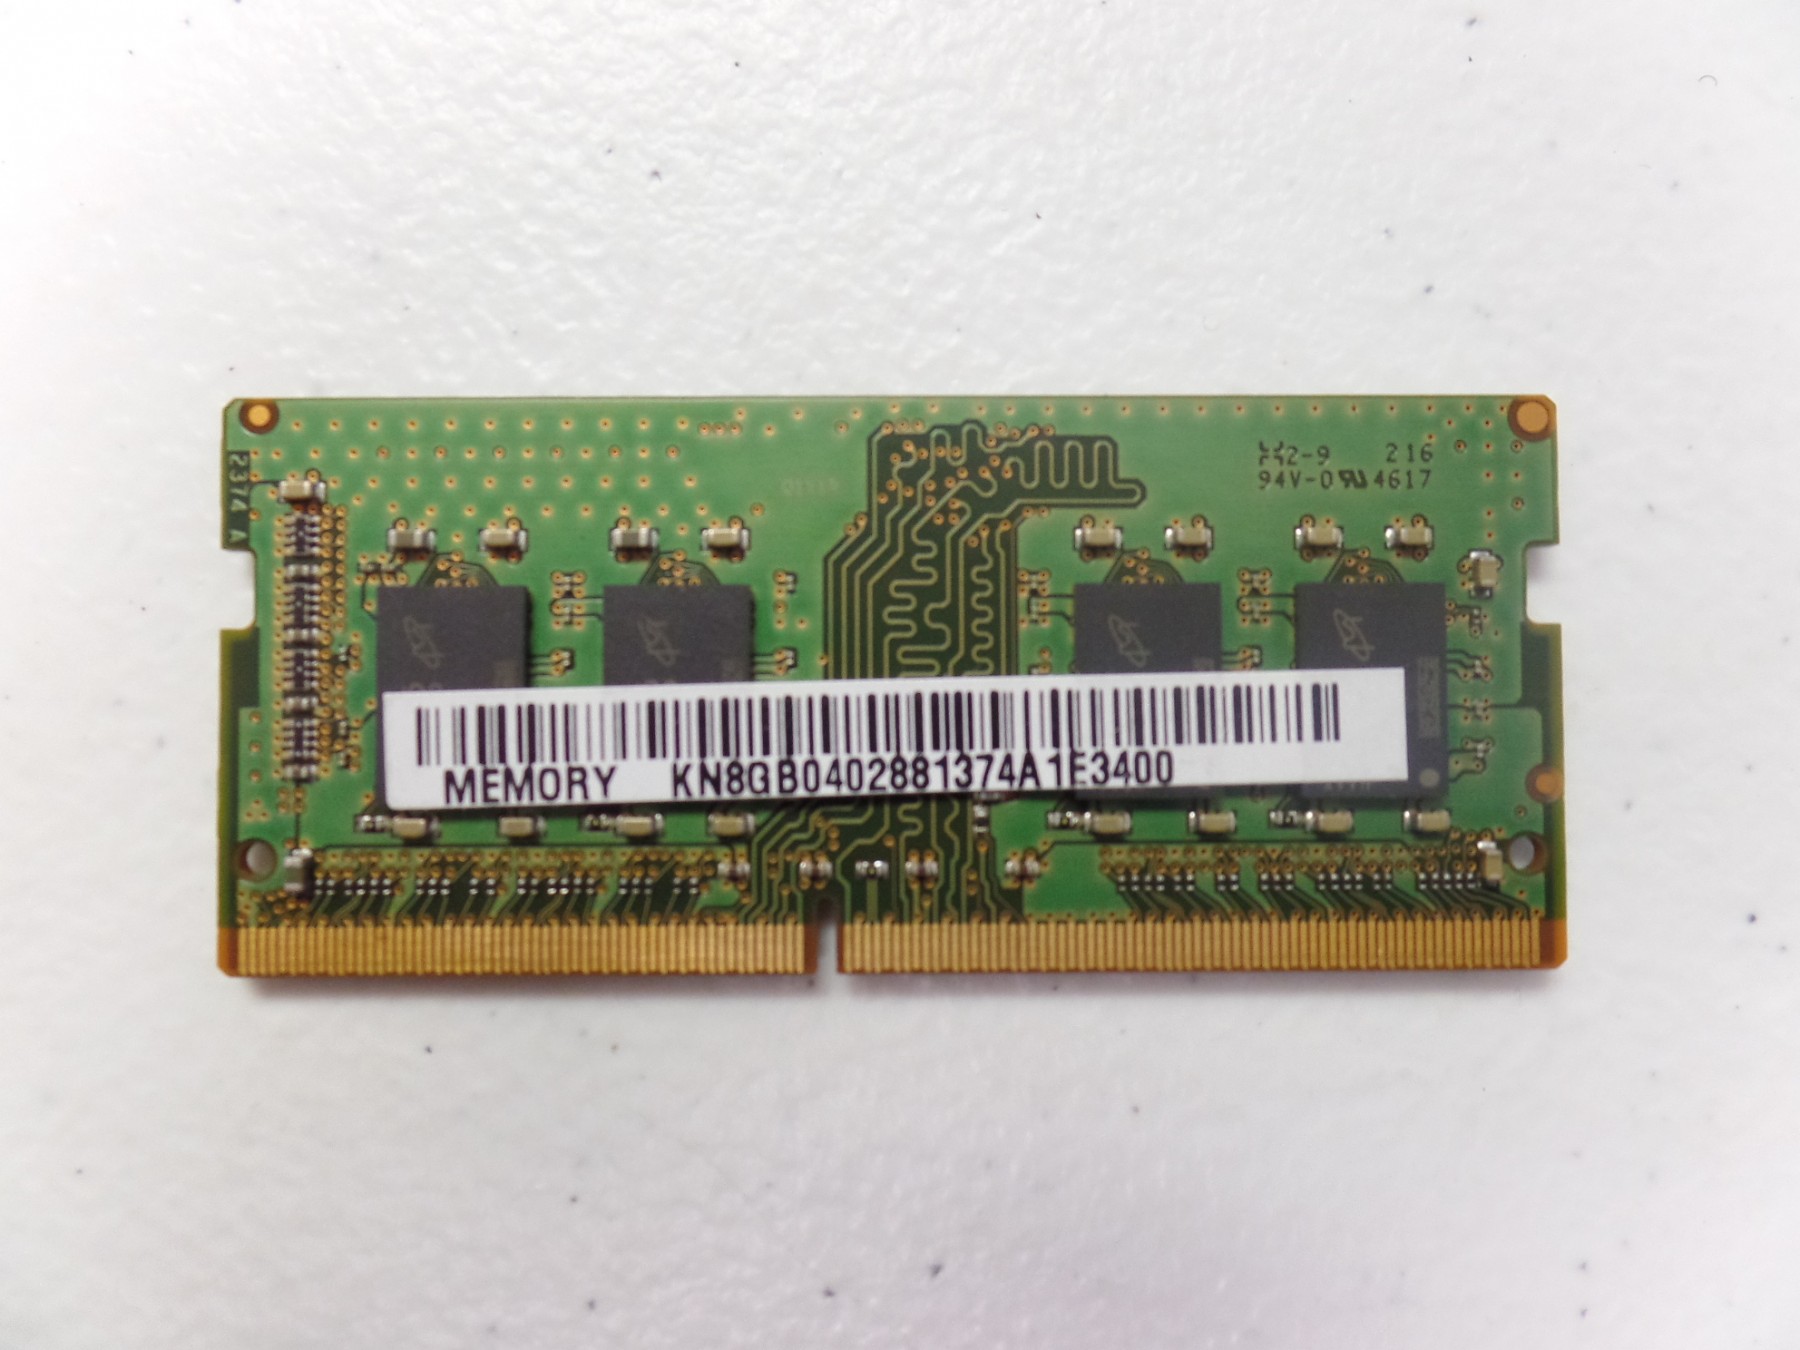 A-Tech 64GB キット (2x32GB) RAM Acer Predator Helios 300 PH315-52-710B ゲーミングノートパソコン | DDR4 2666MHz SODIMM PC4-21300 (PC4-2666V) メモリアッ